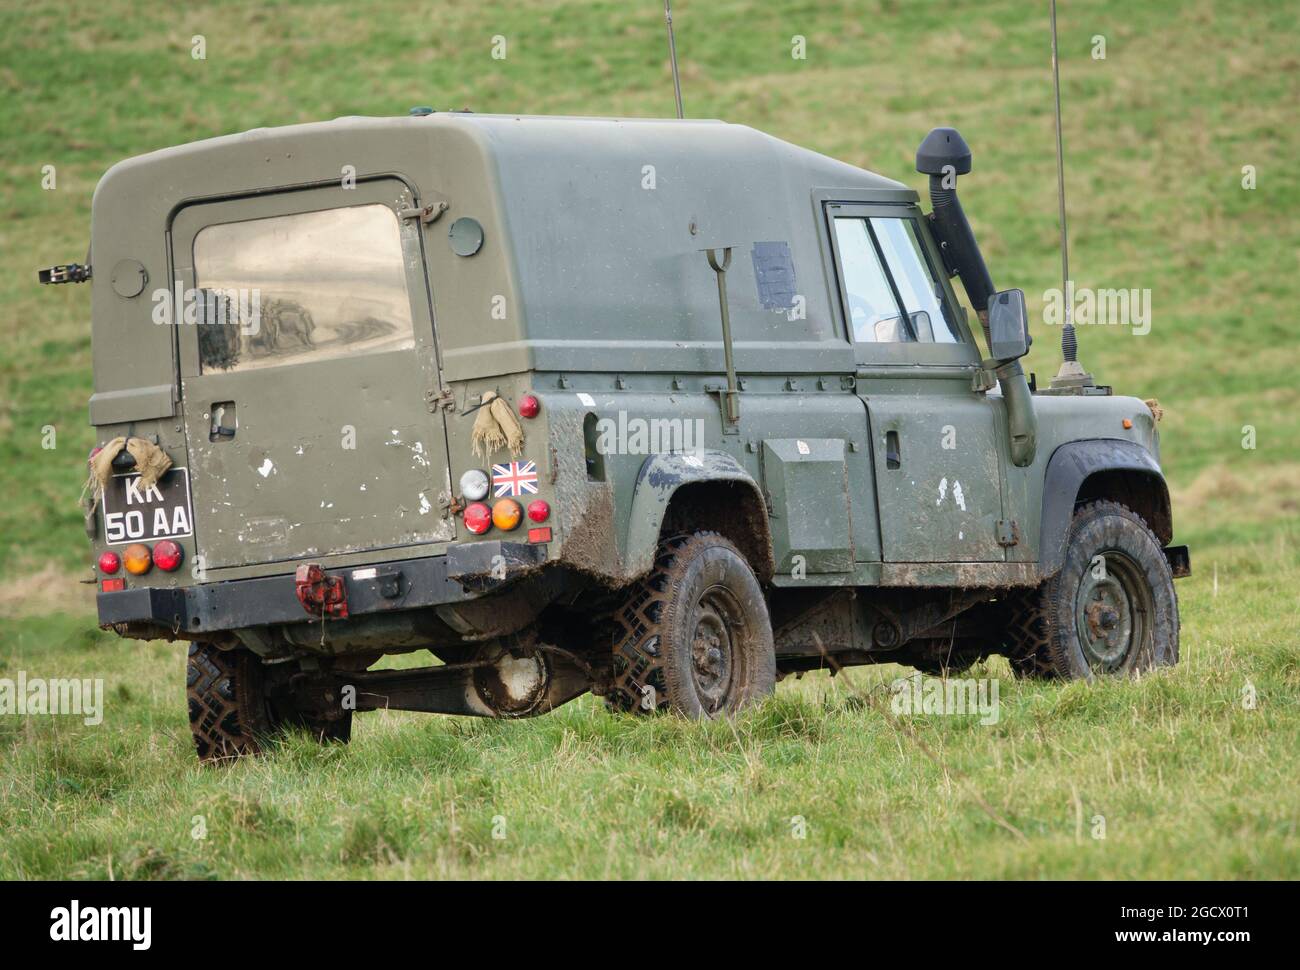 British Army Land Rover Defender light utility vehicle on exercise Salisbury Plain, Wiltshire, UK Stock Photo